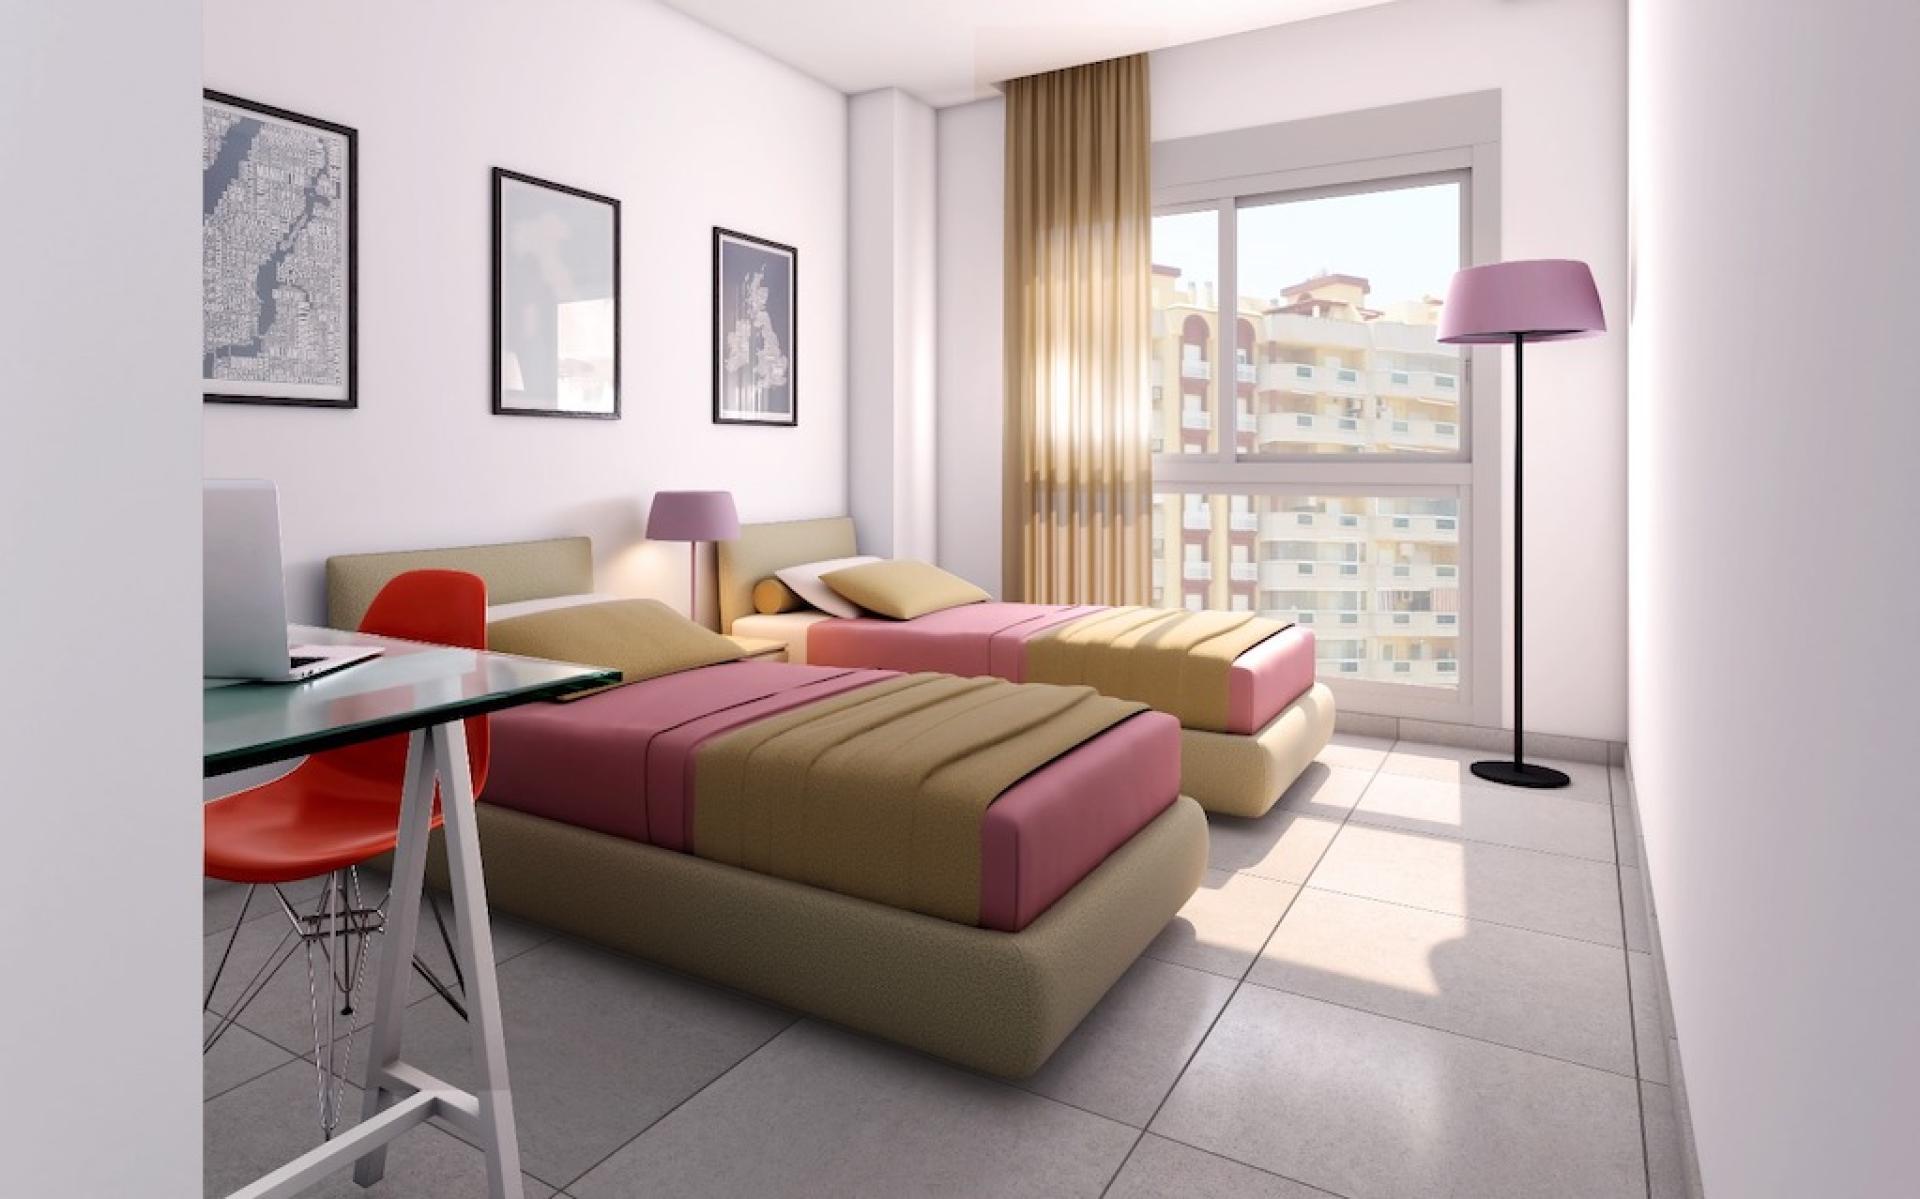 2 slaapkamer Appartement met terras in La Manga - Nieuwbouw in Medvilla Spanje